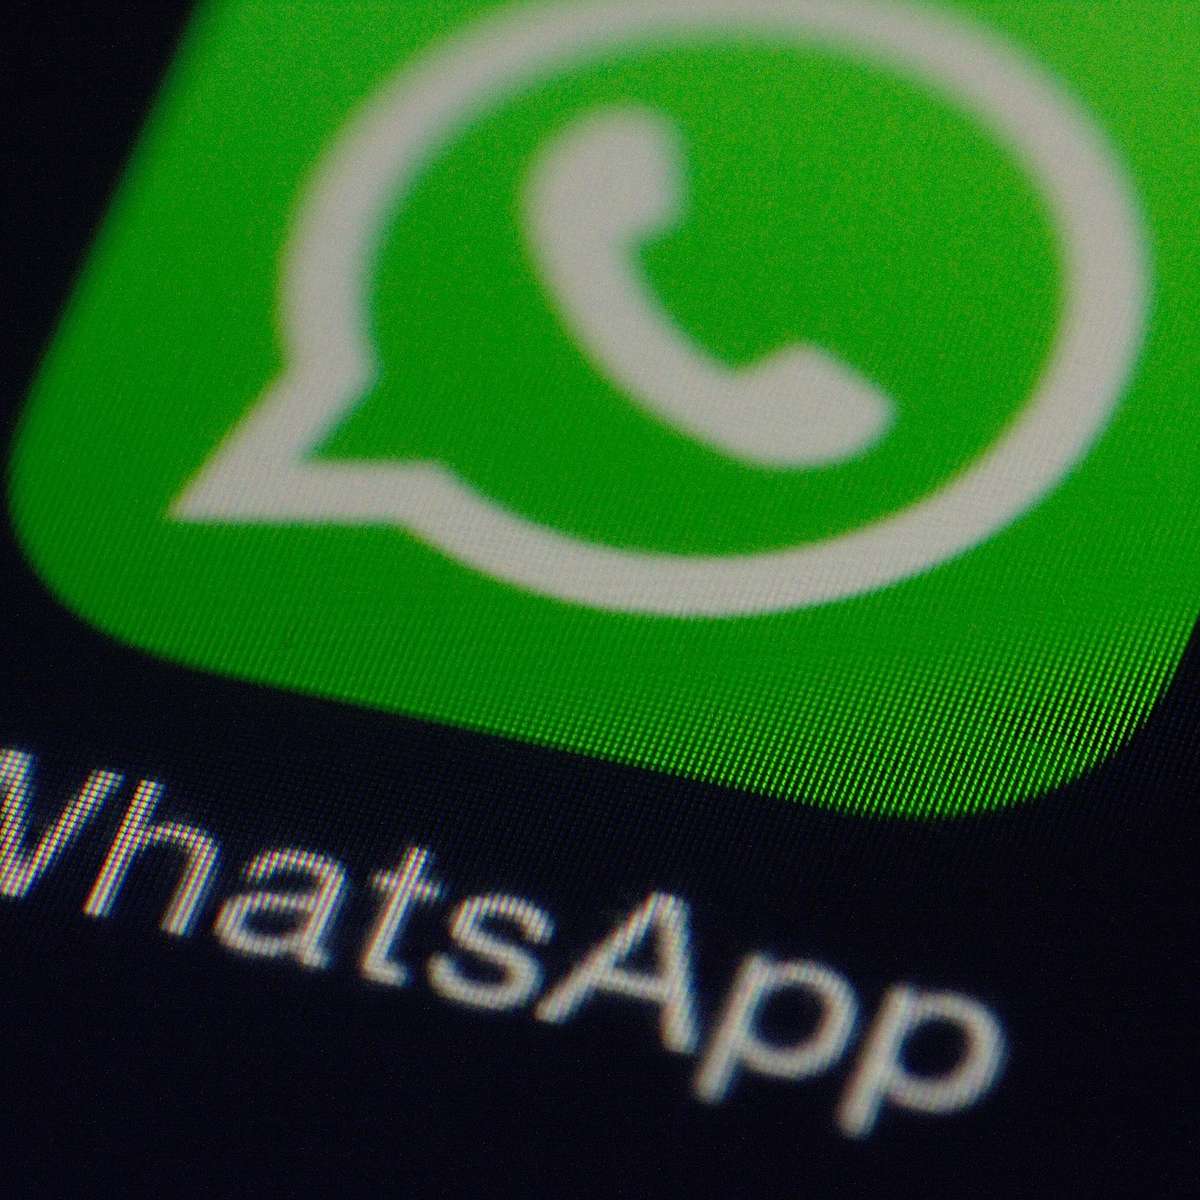 WhatsApp agora pode ser usado em mais de um celular Android - TecMundo